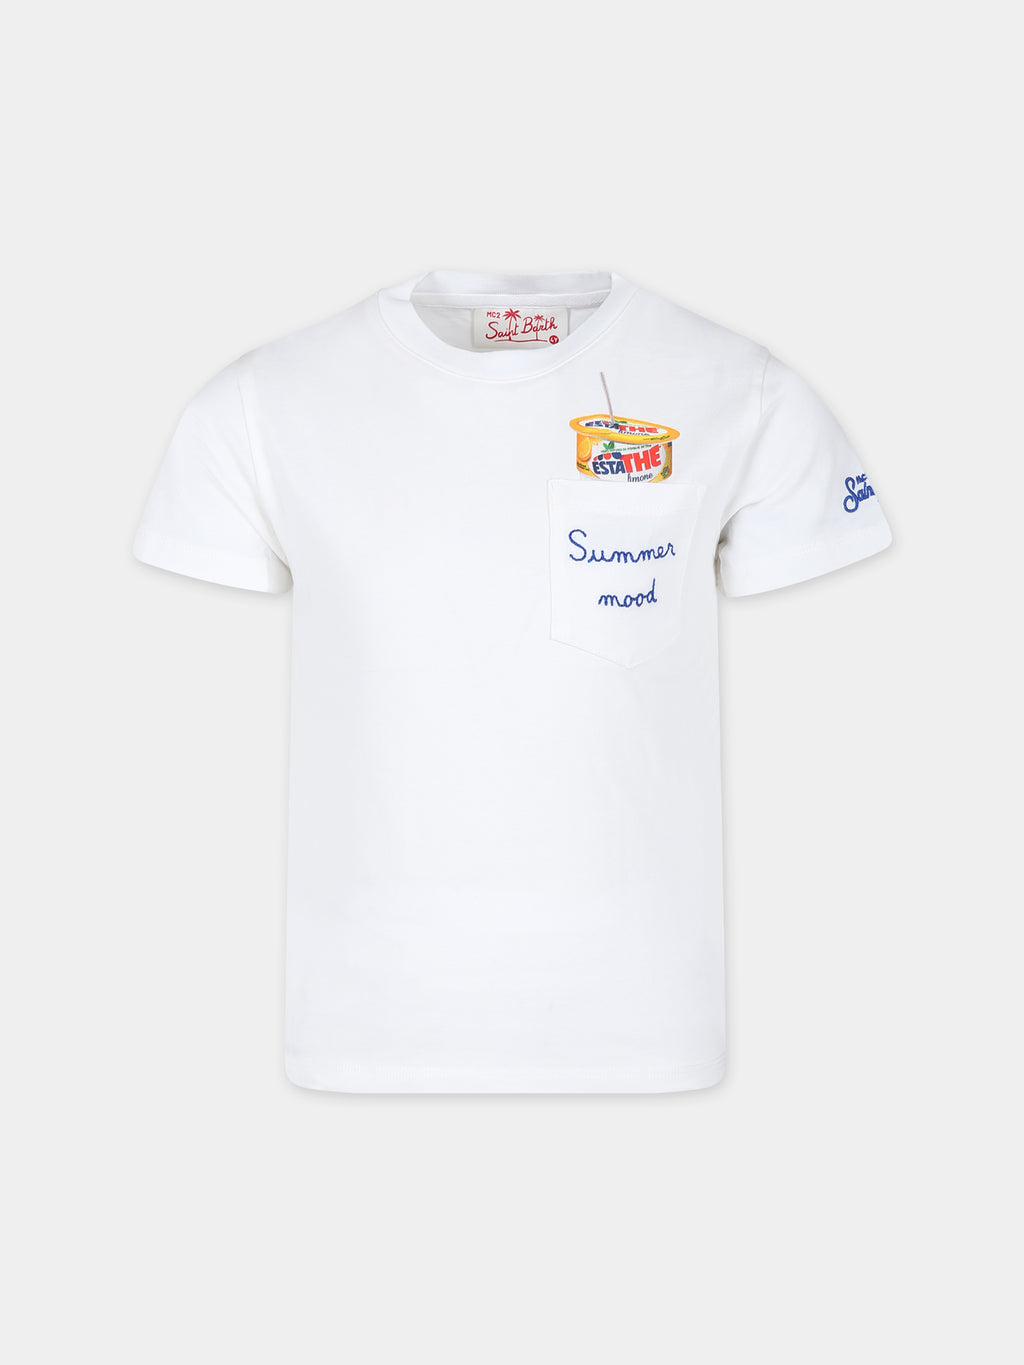 T-shirt blanc pour garçon avec imprimé Estathé